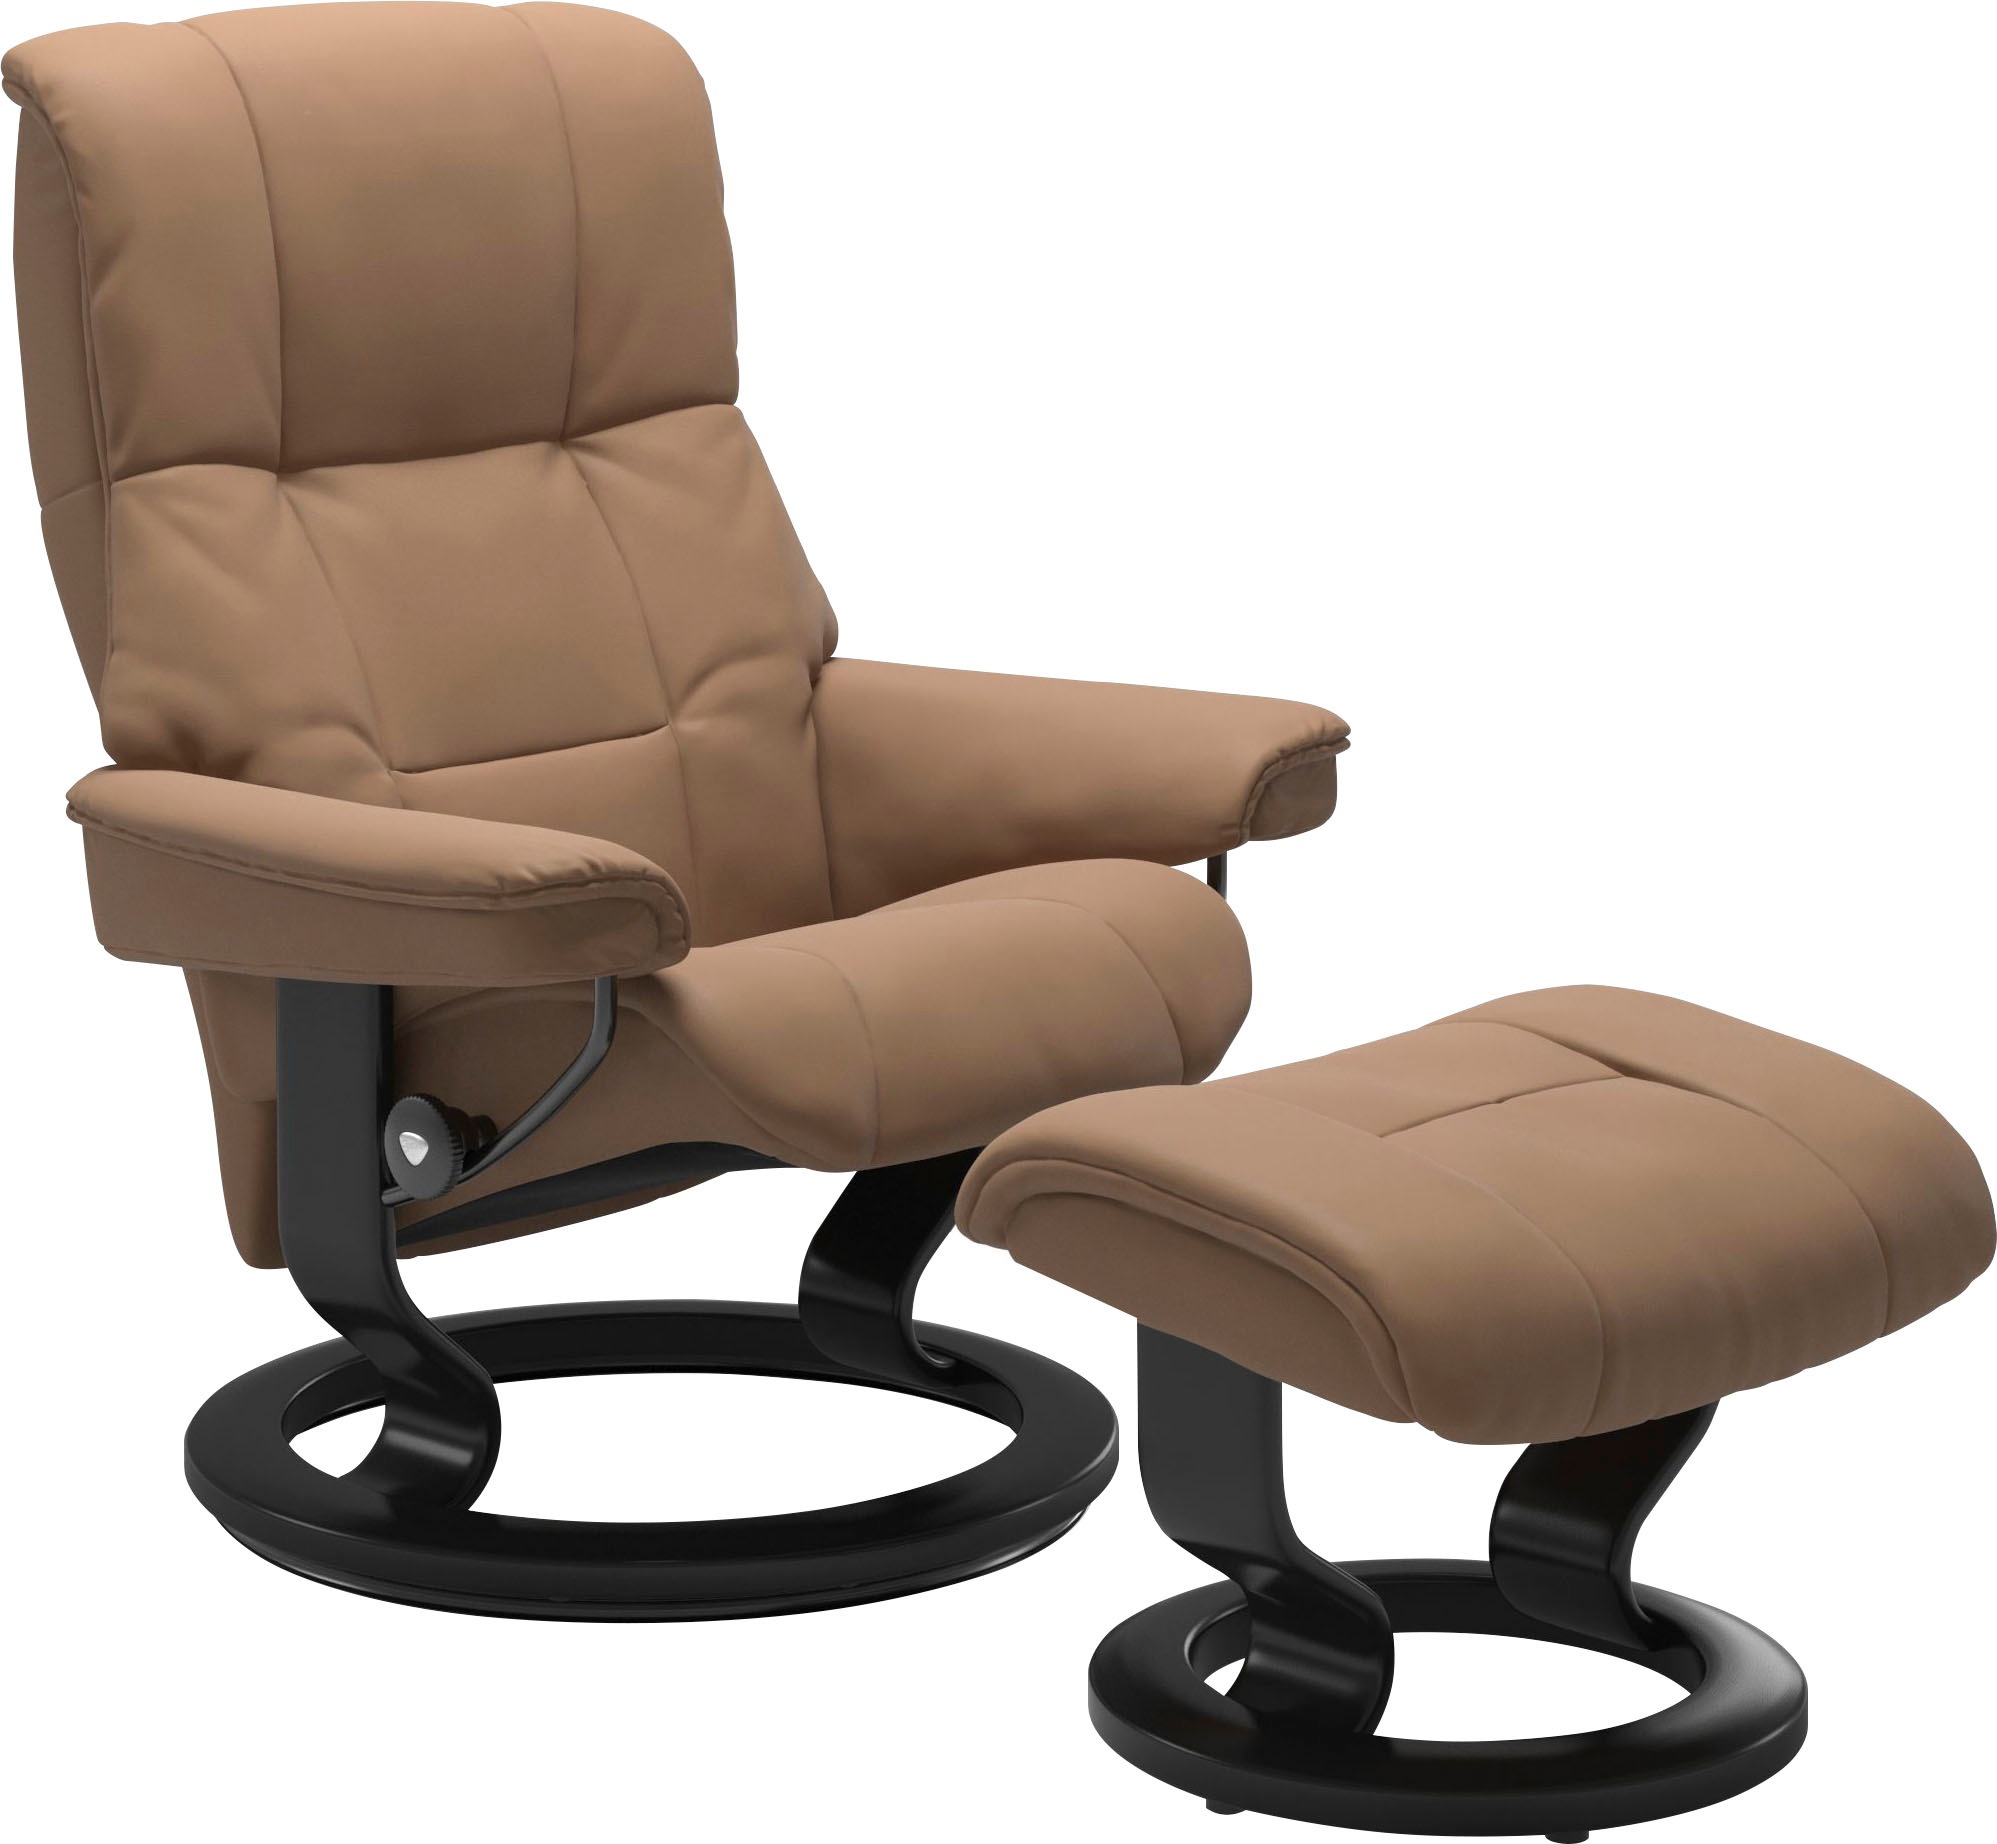 Stressless ® Atpalaiduojanti kėdė »Mayfair« su Cl...